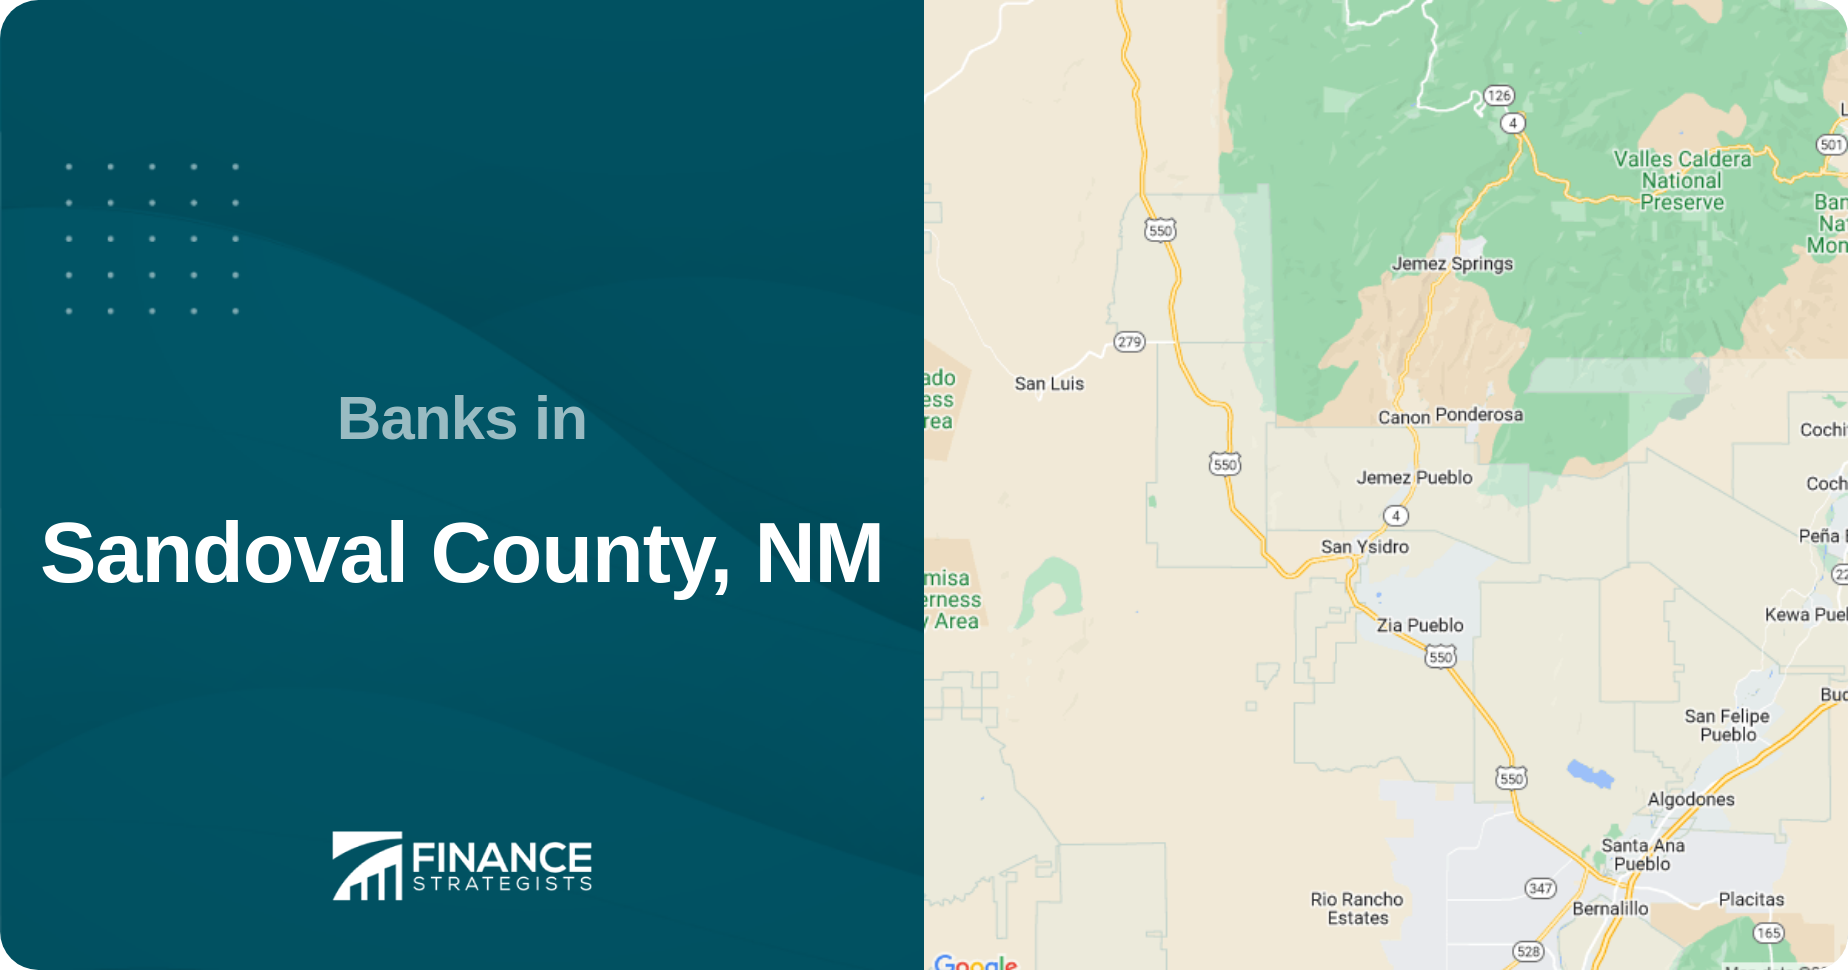 Banks in Sandoval County, NM